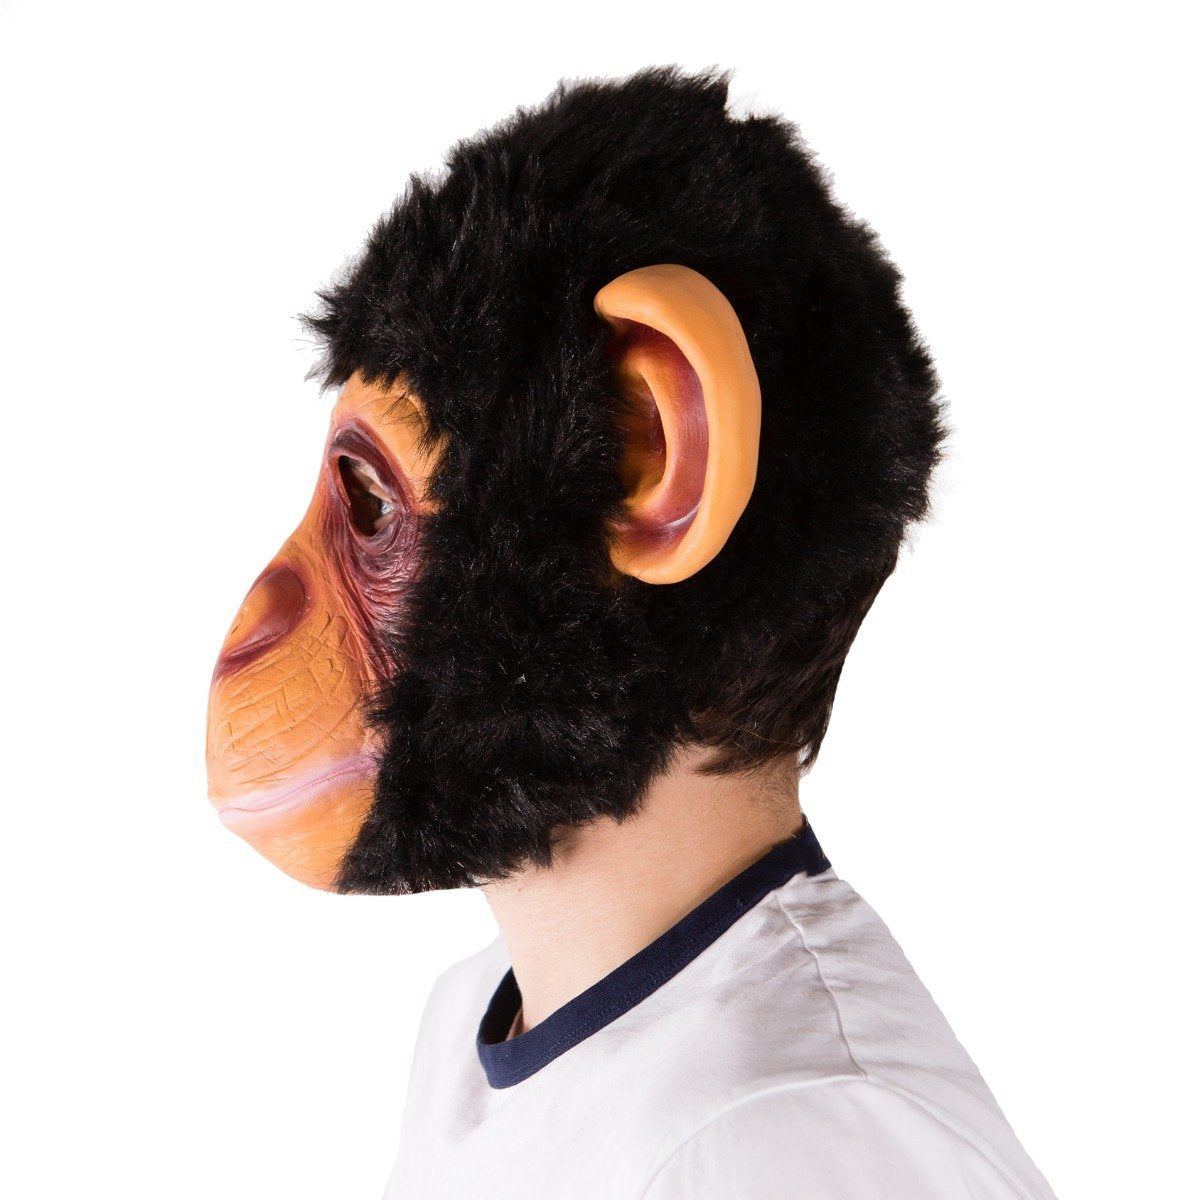 Bodysocks - Latex Monkey Mask